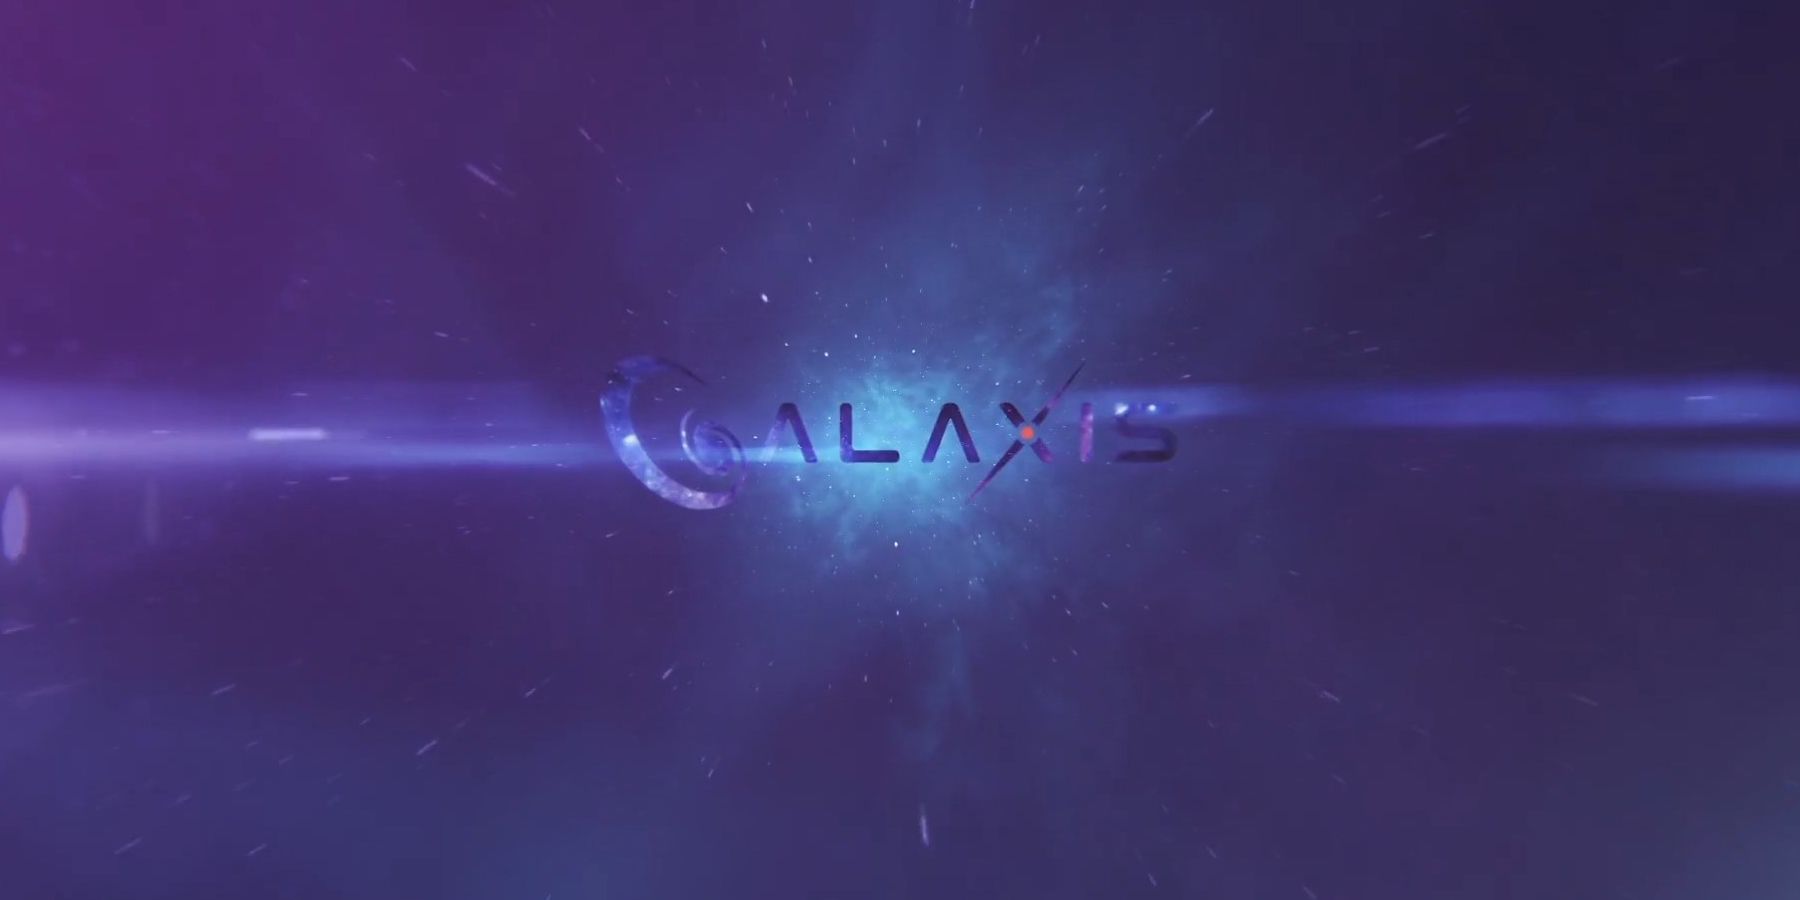 Galaxis ინტერვიუ: აღმასრულებელი დირექტორი მაქს გალარდო დეტალებს ნაკადის პლატფორმის წერტილების სისტემებს, საზოგადოების ზომიერებას და ა.შ.